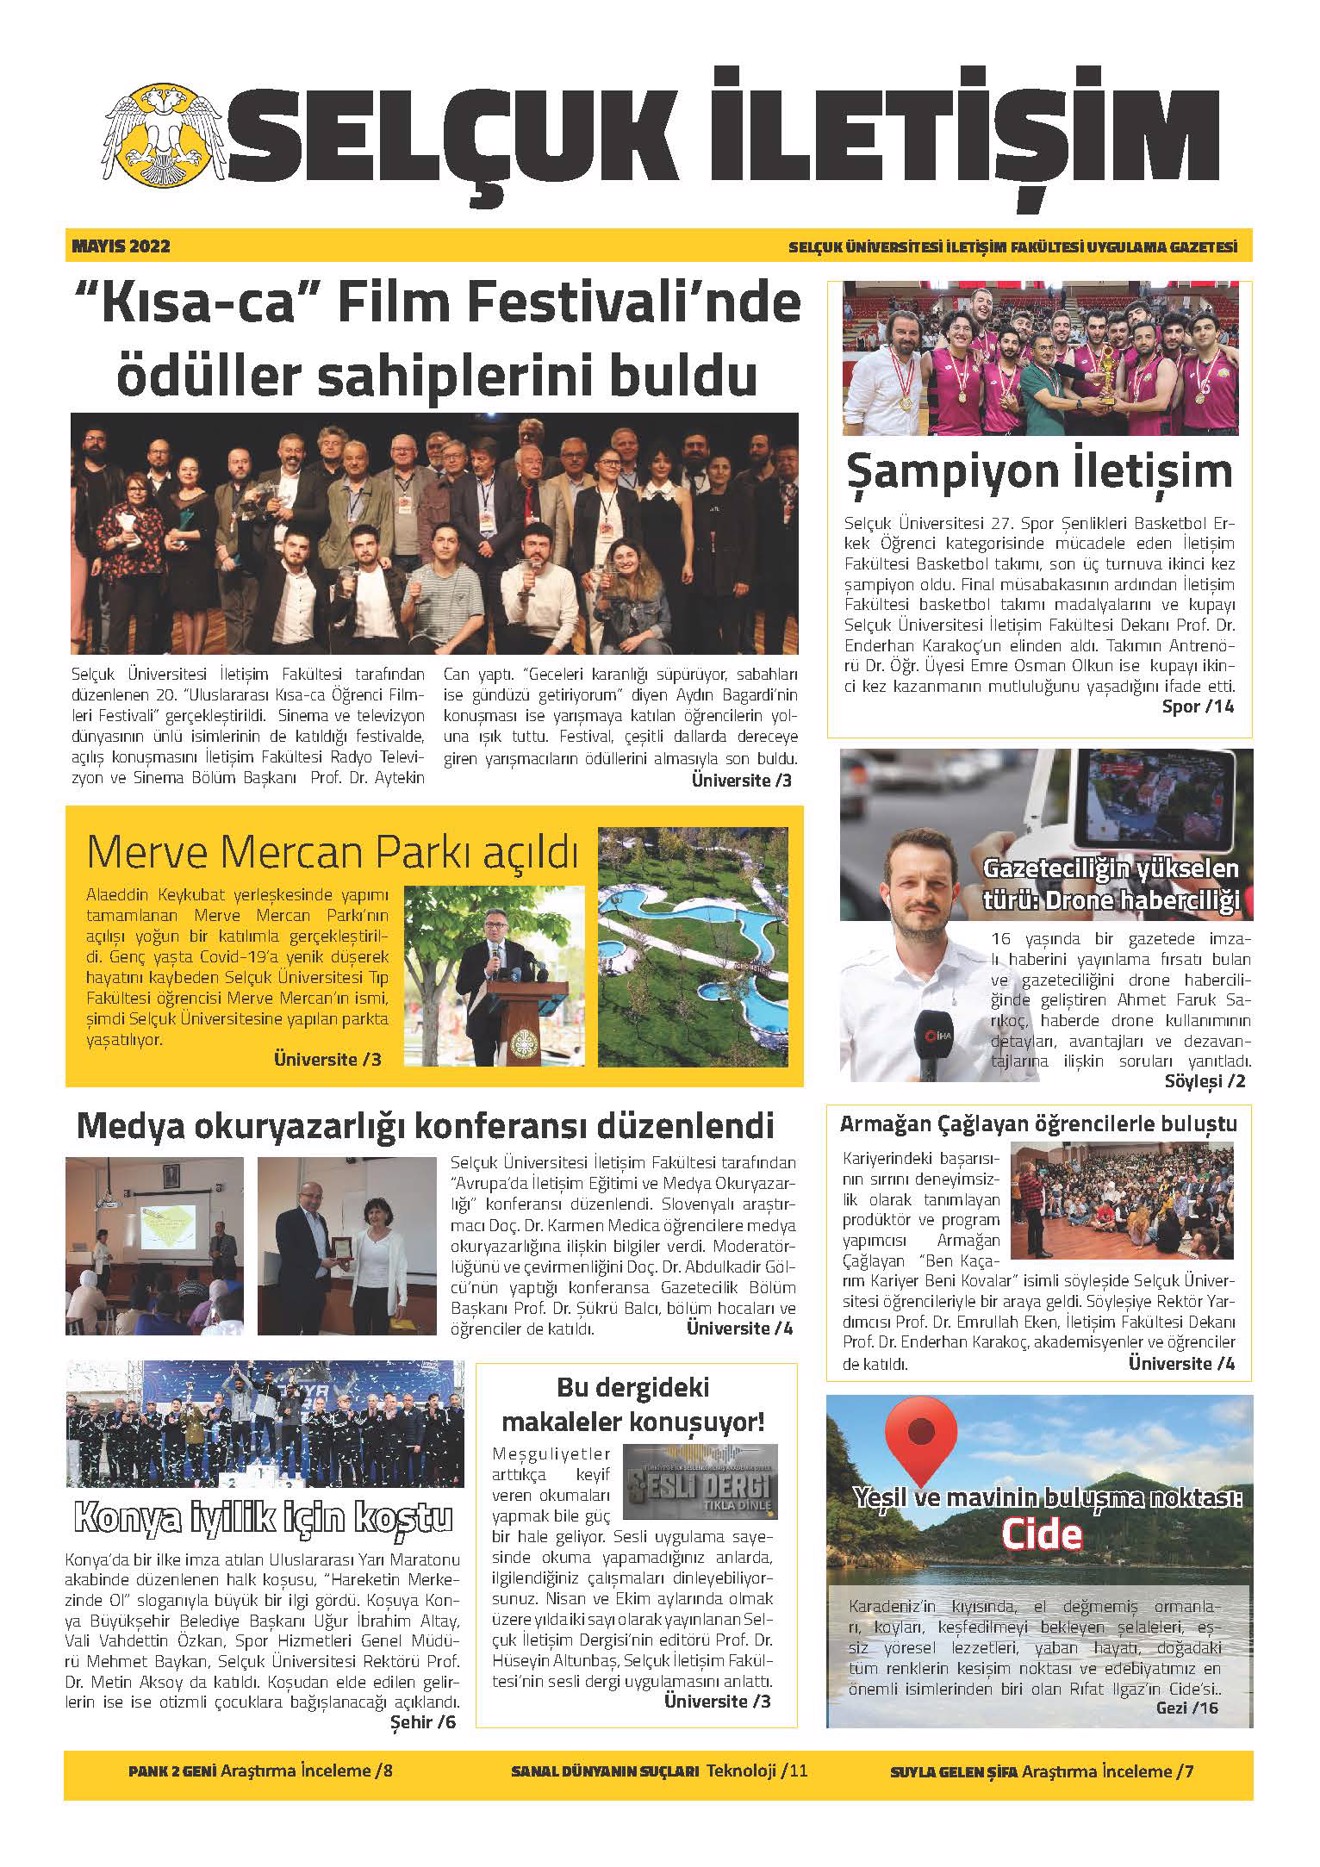 Selçuk Communication Newspapers